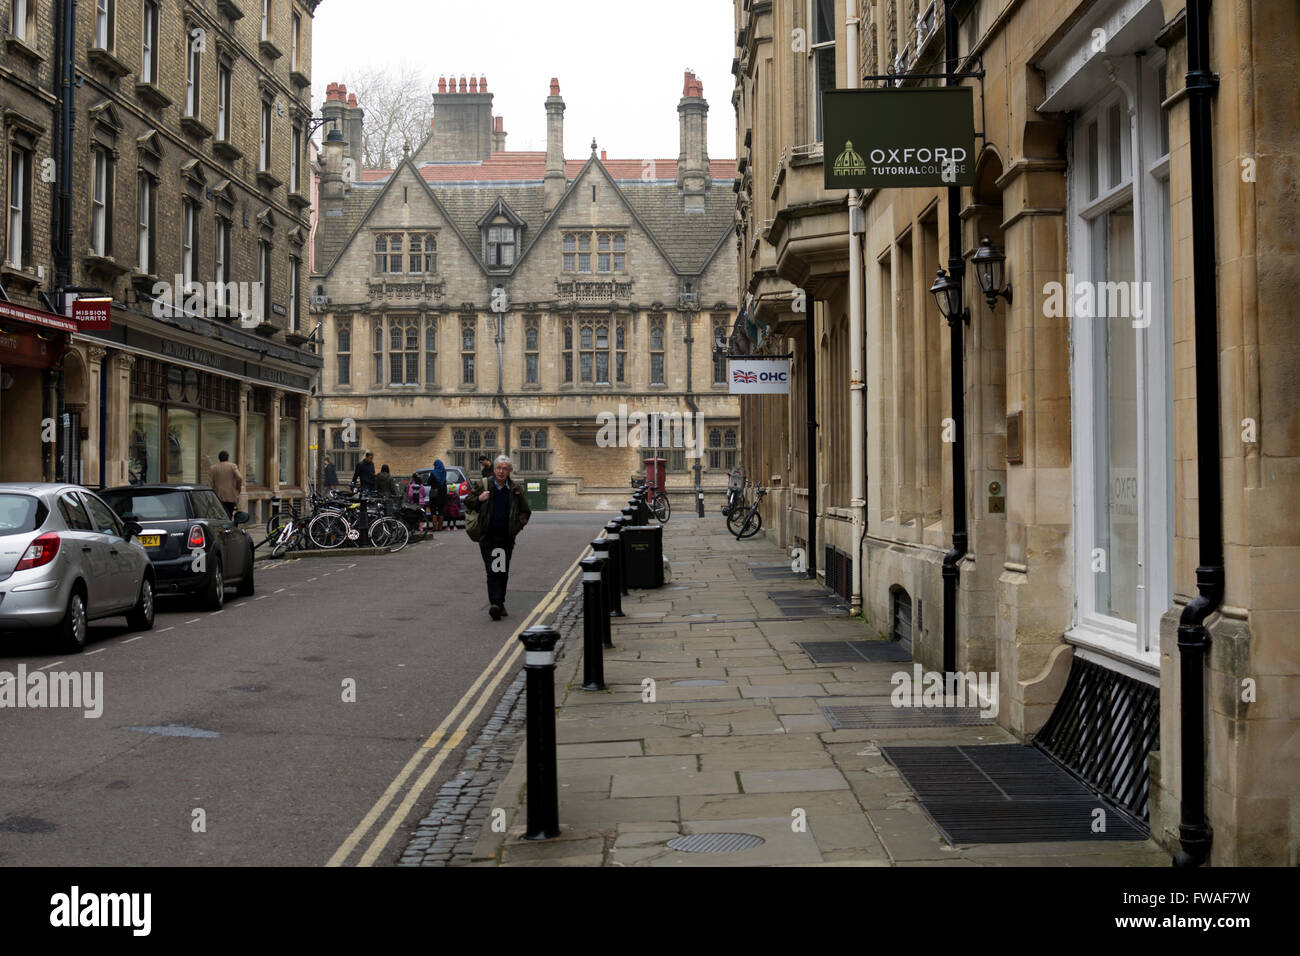 King Edward Street, Oxford city centre, REGNO UNITO Foto Stock